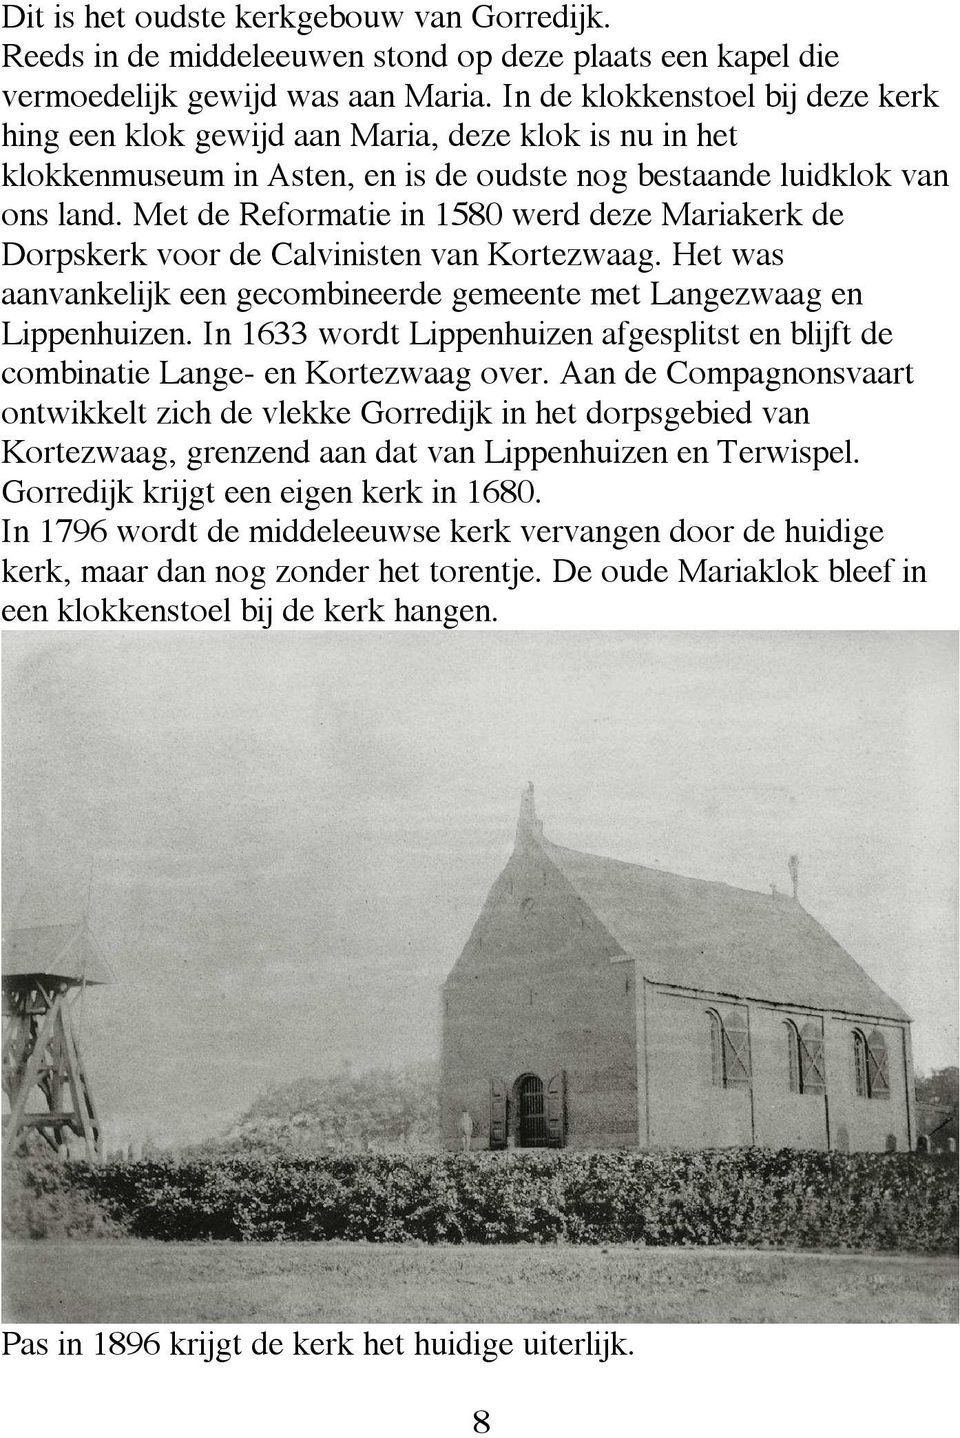 Met de Reformatie in 1580 werd deze Mariakerk de Dorpskerk voor de Calvinisten van Kortezwaag. Het was aanvankelijk een gecombineerde gemeente met Langezwaag en Lippenhuizen.